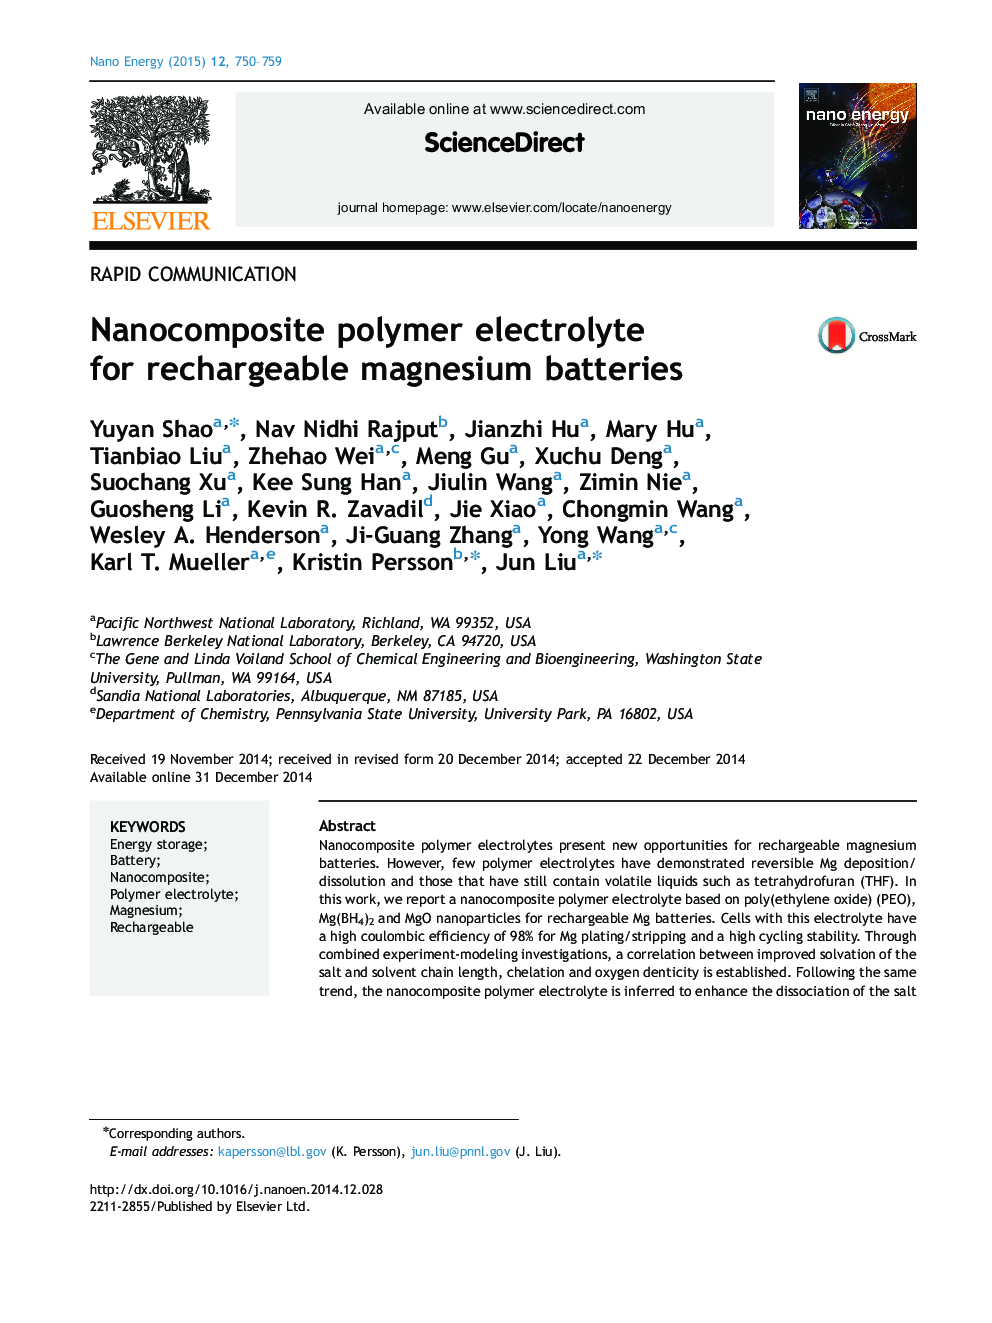 الکترولیت پلیمری نانوکامپوزیت برای باتری های قابل شارژ منیزیم 